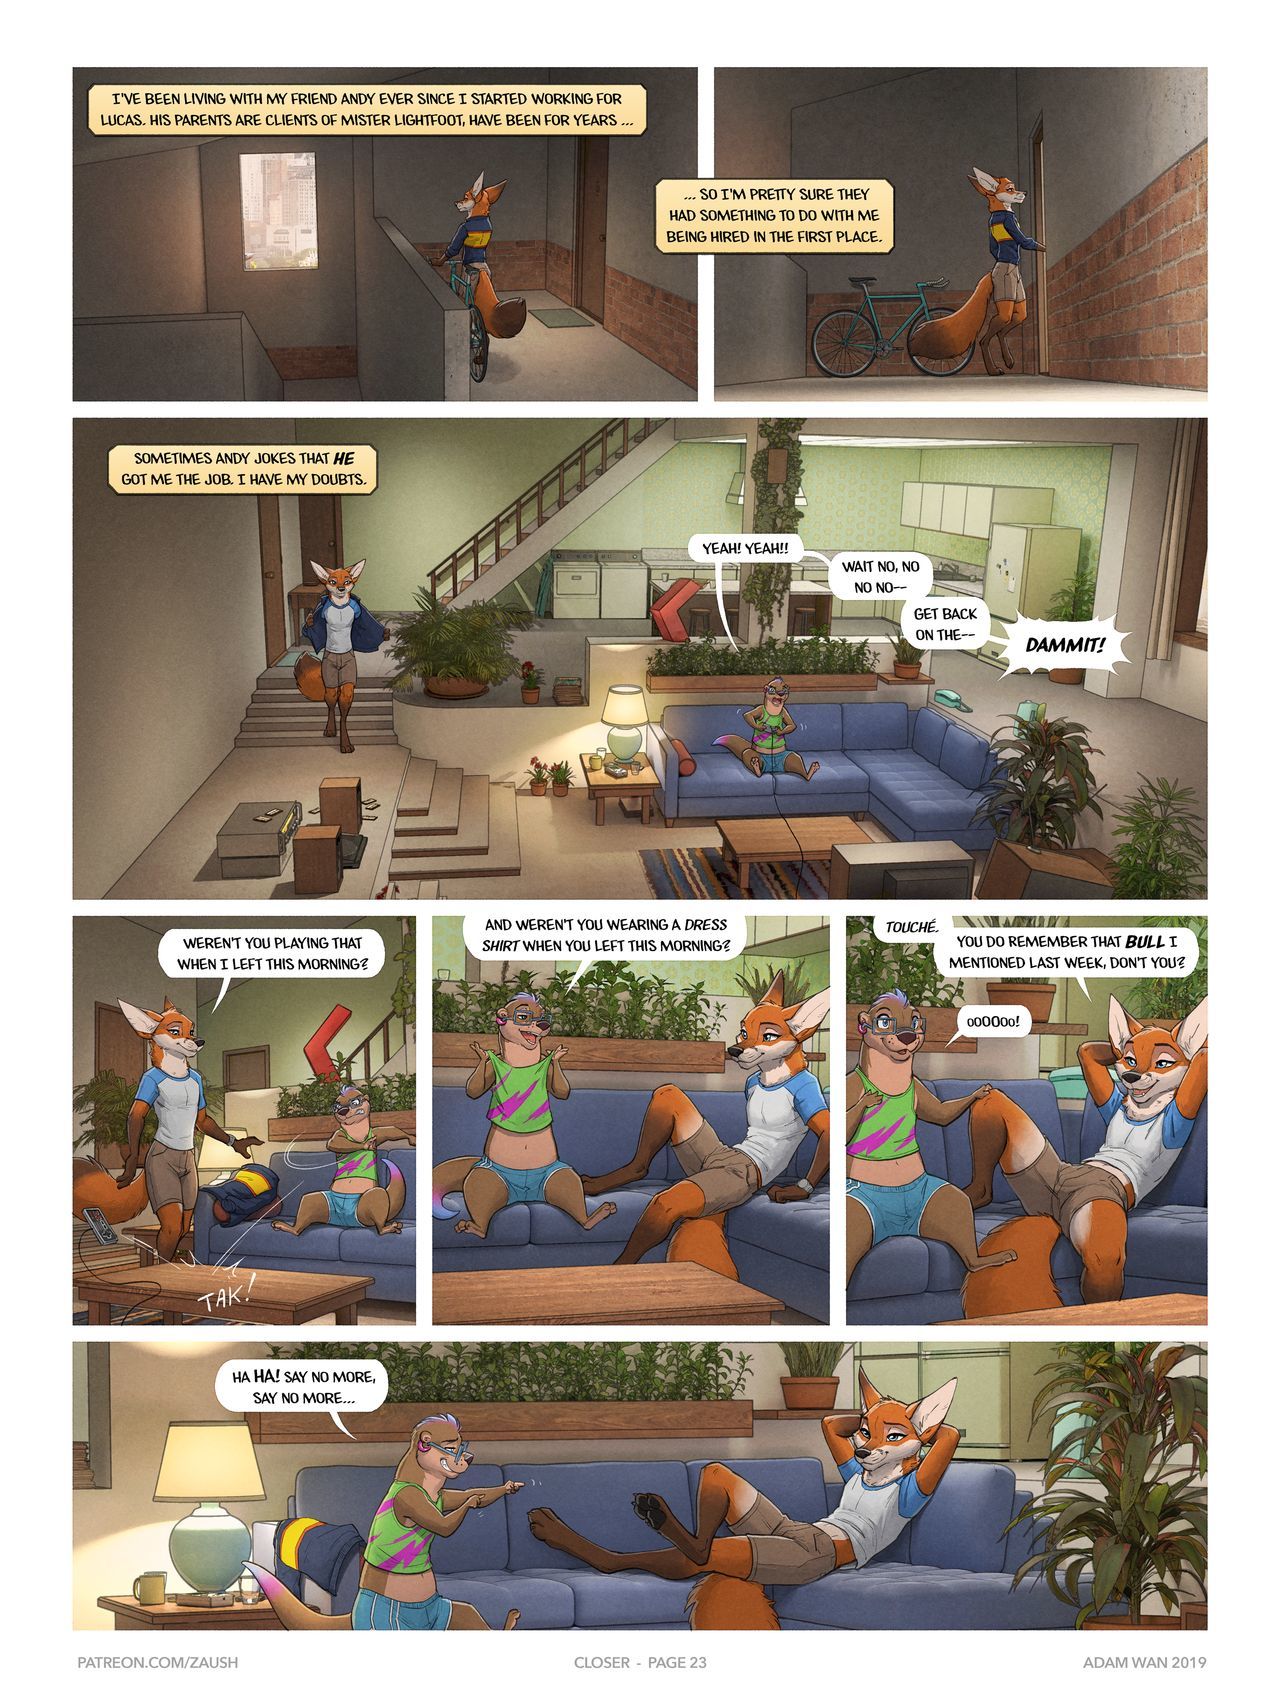 Closer - Zaush page 23